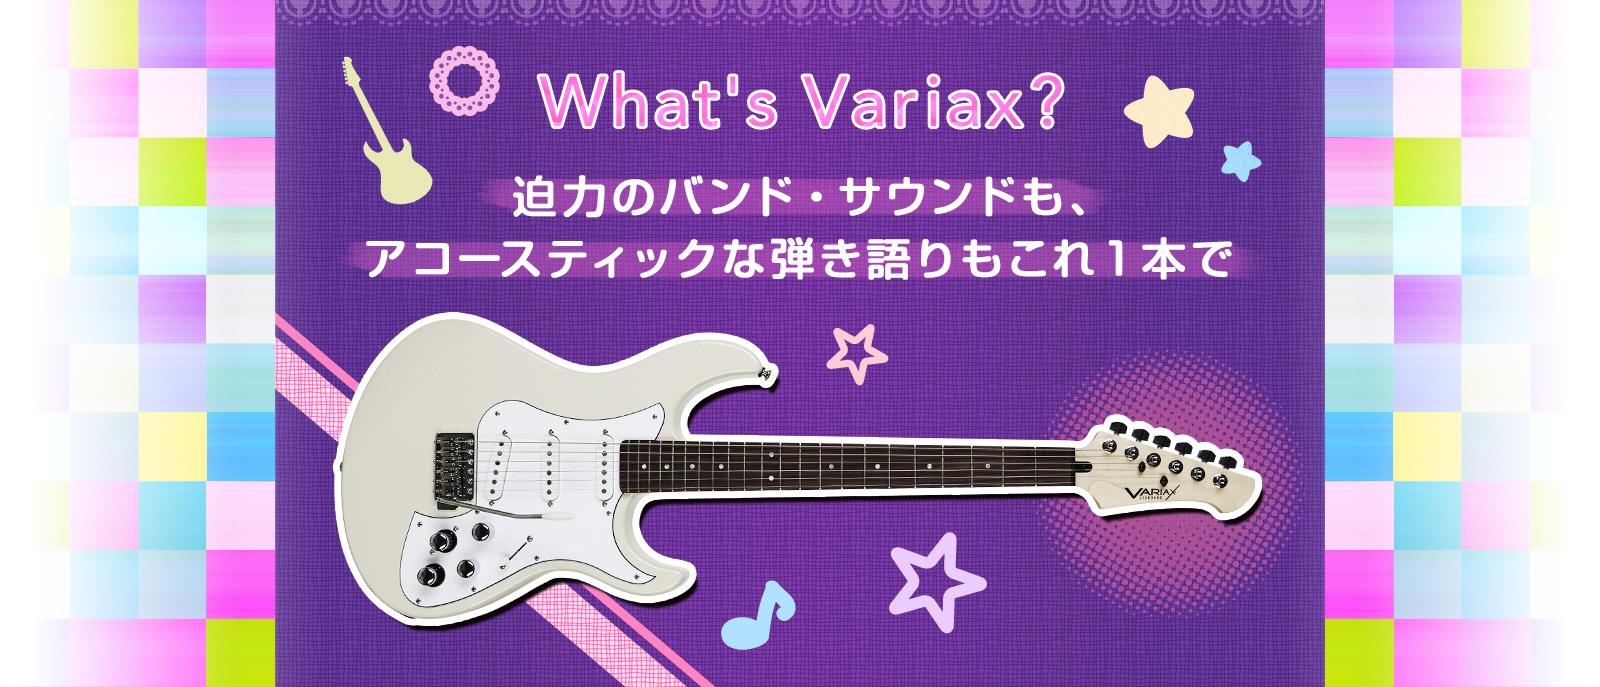 what's variax? 迫力のバンド・サウンドも。アコースティックな弾き語りもこれ一本で